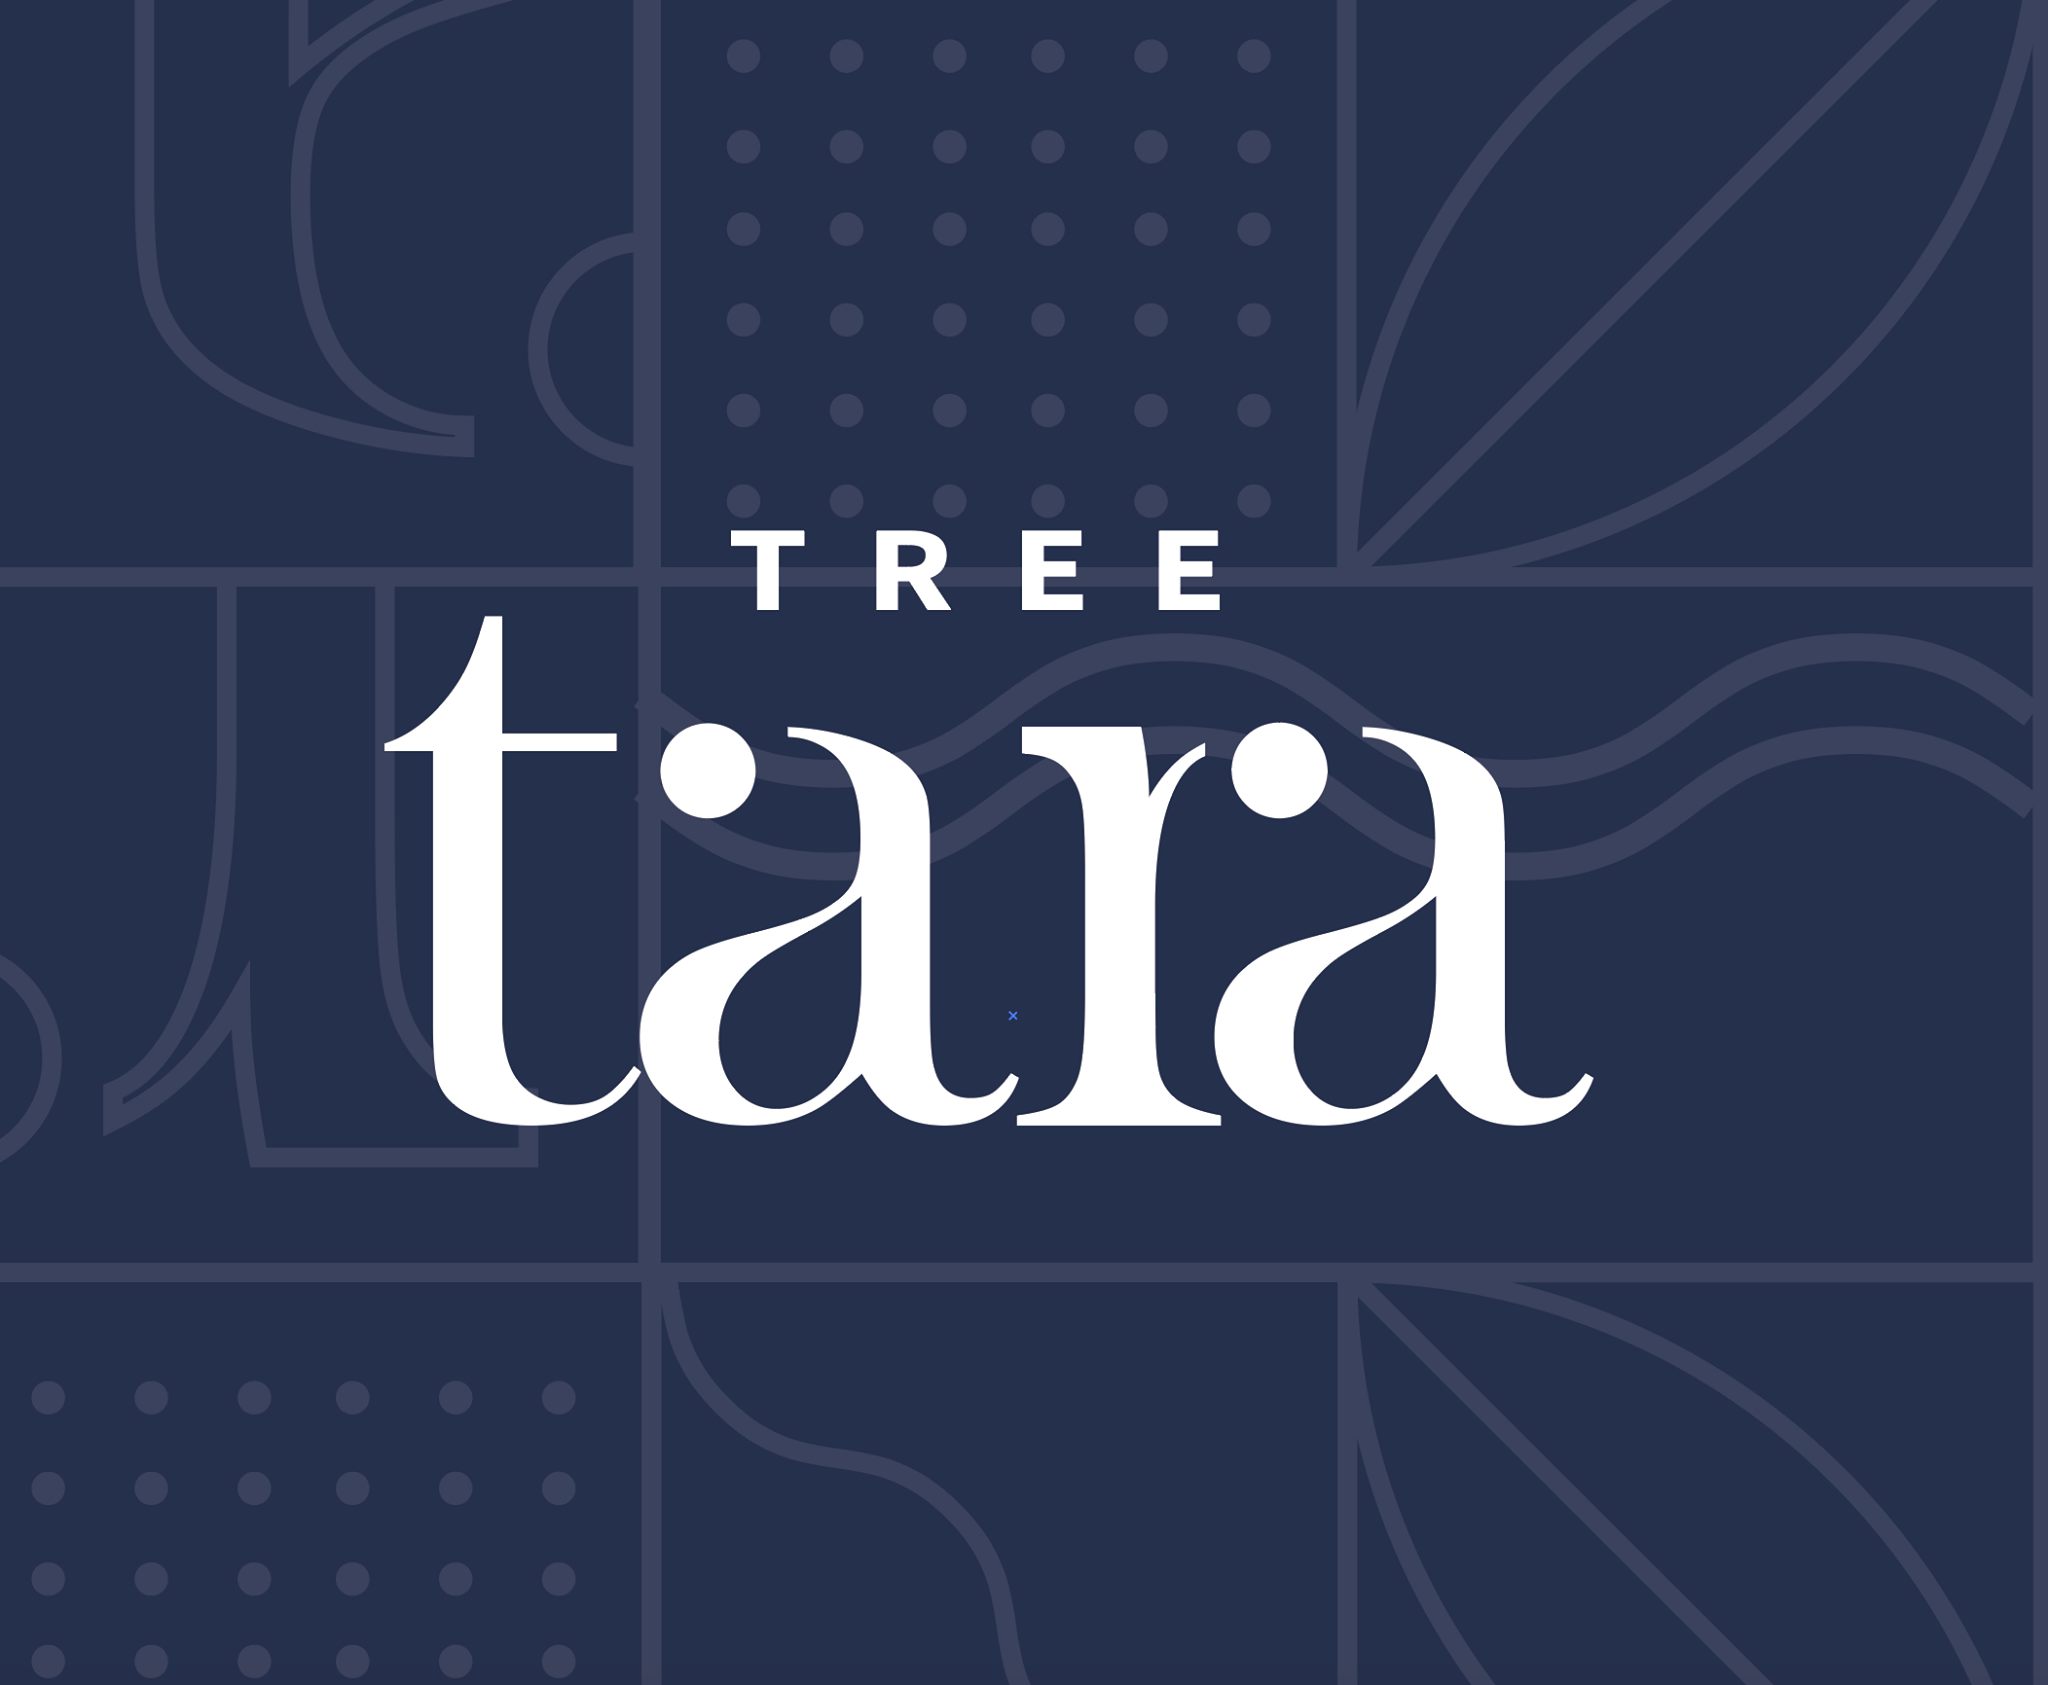 โรงแรมทรีธารา (Tree Tara Hotel)